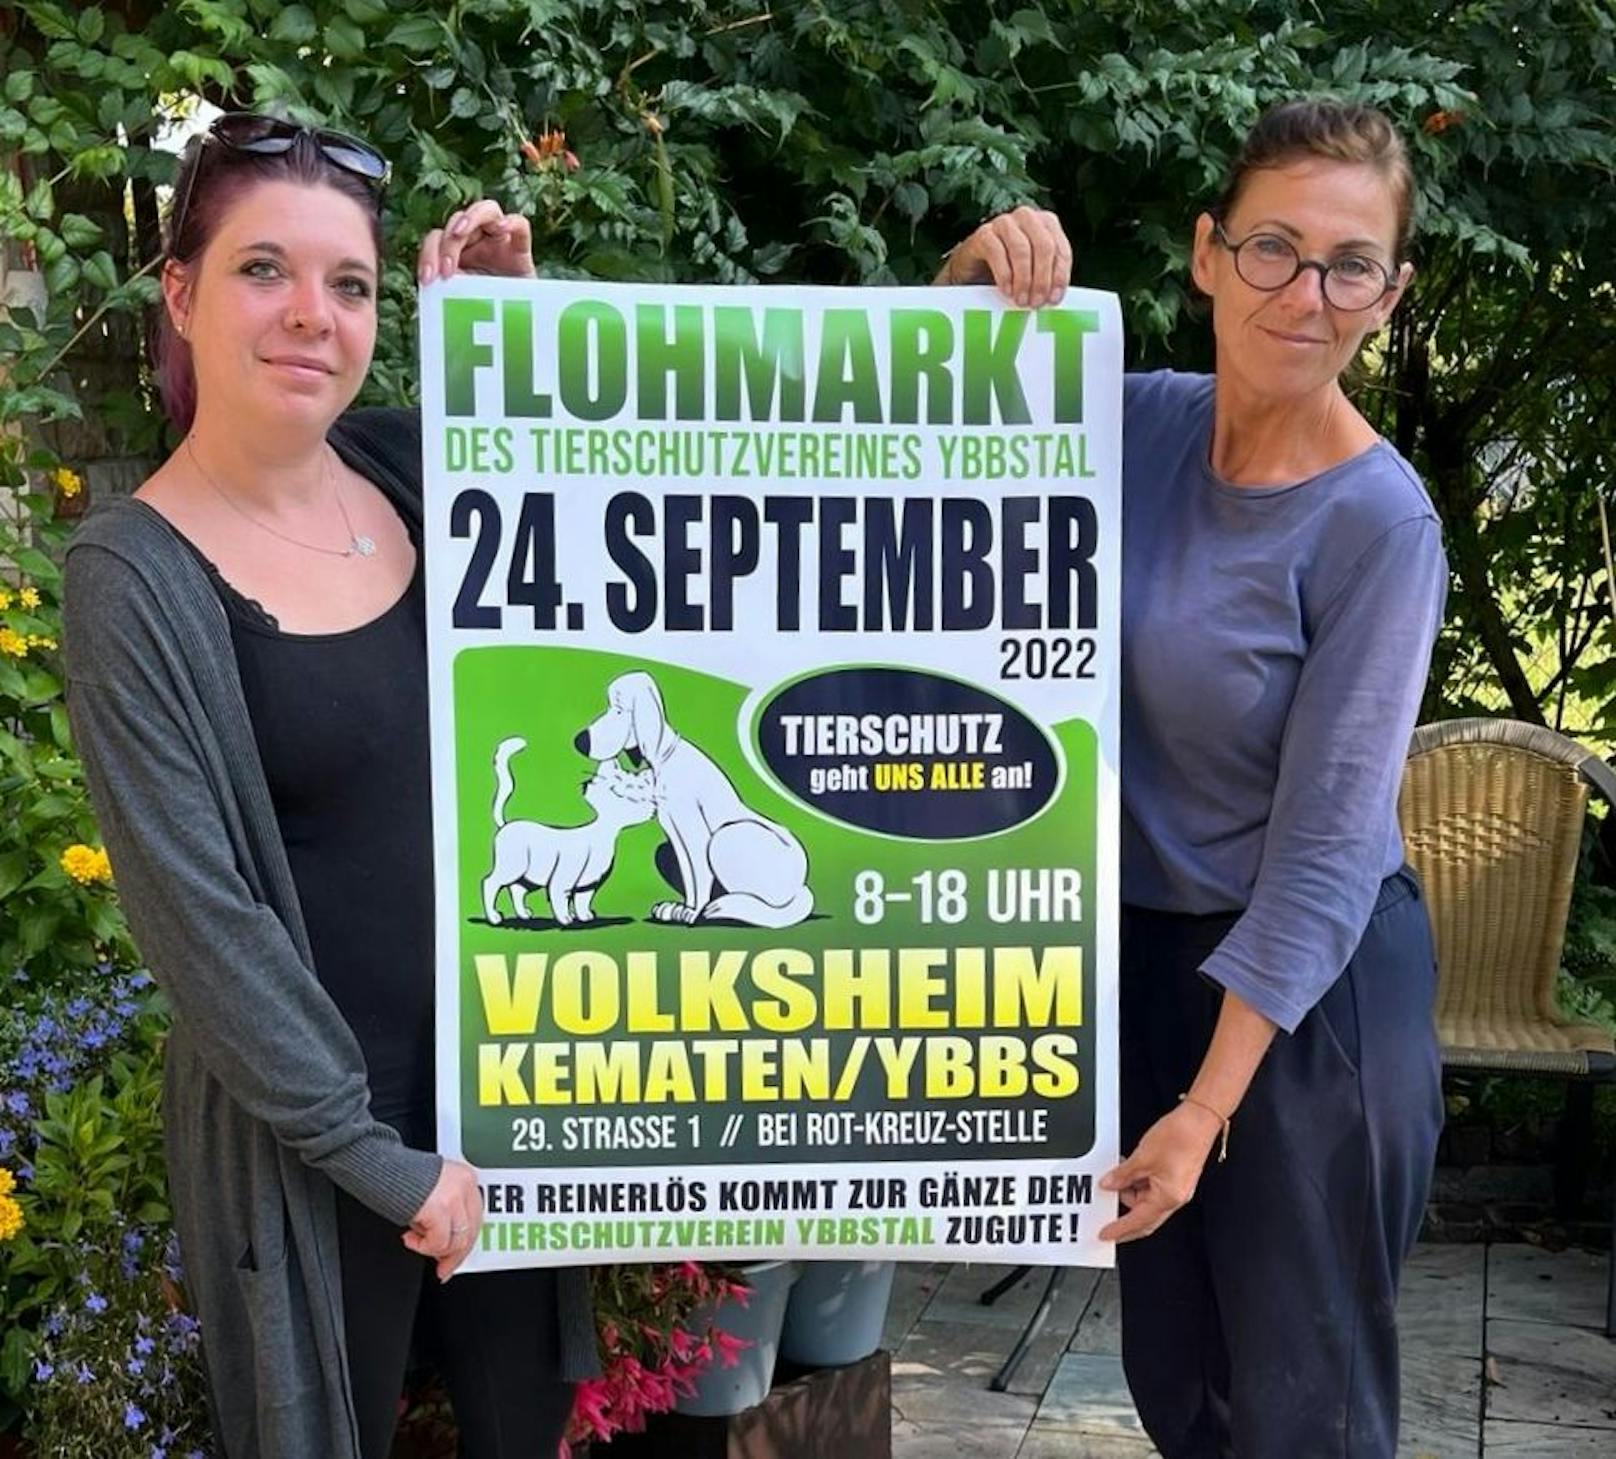 Der Flohmarkt findet am 24. September im Volksheim in Kematen an der Ybbs statt.